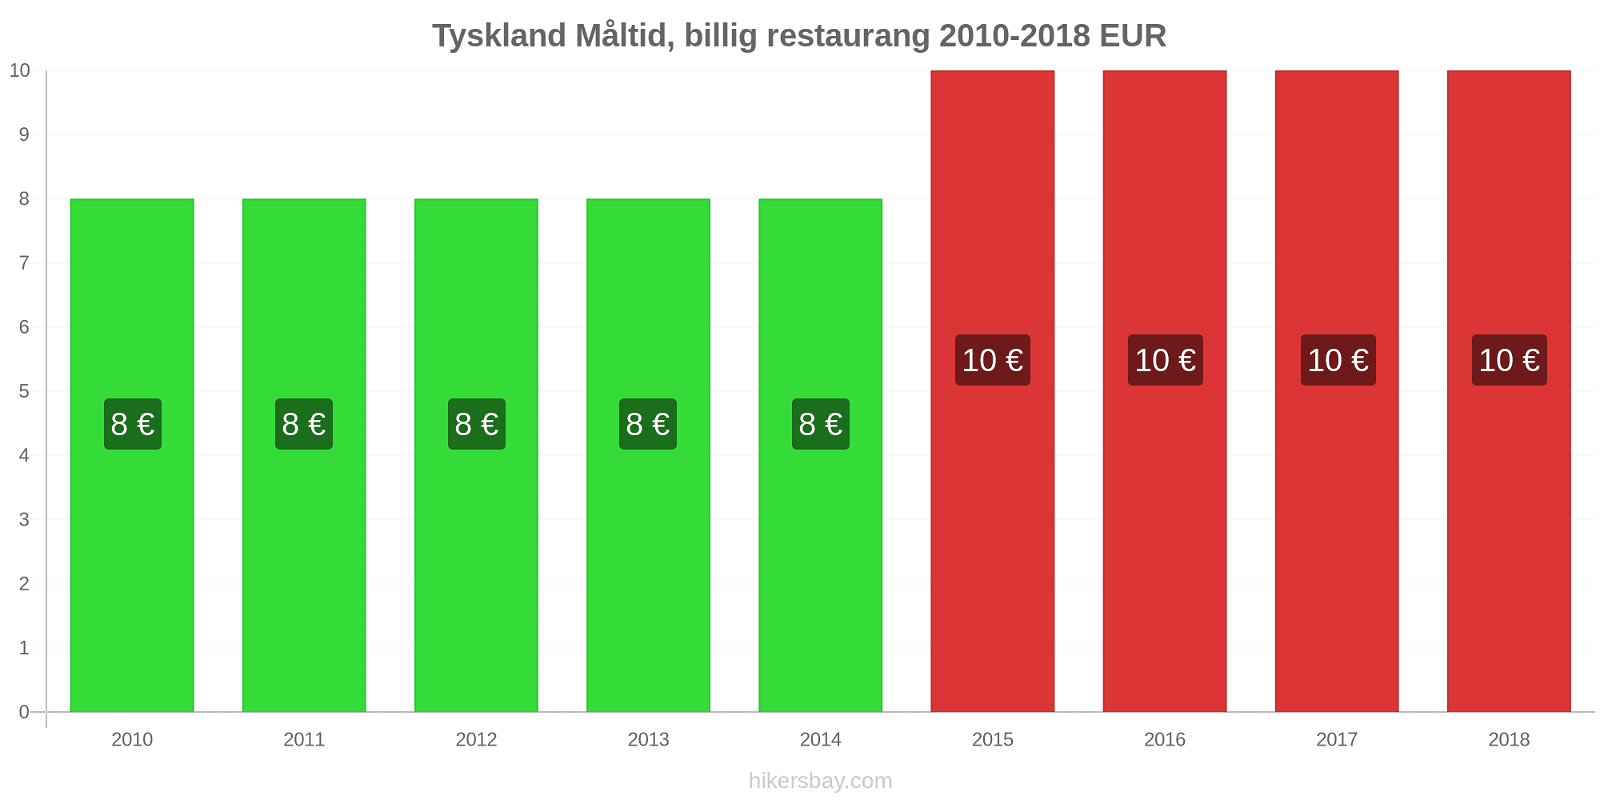 Tyskland prisändringar Måltid i en billig restaurang hikersbay.com